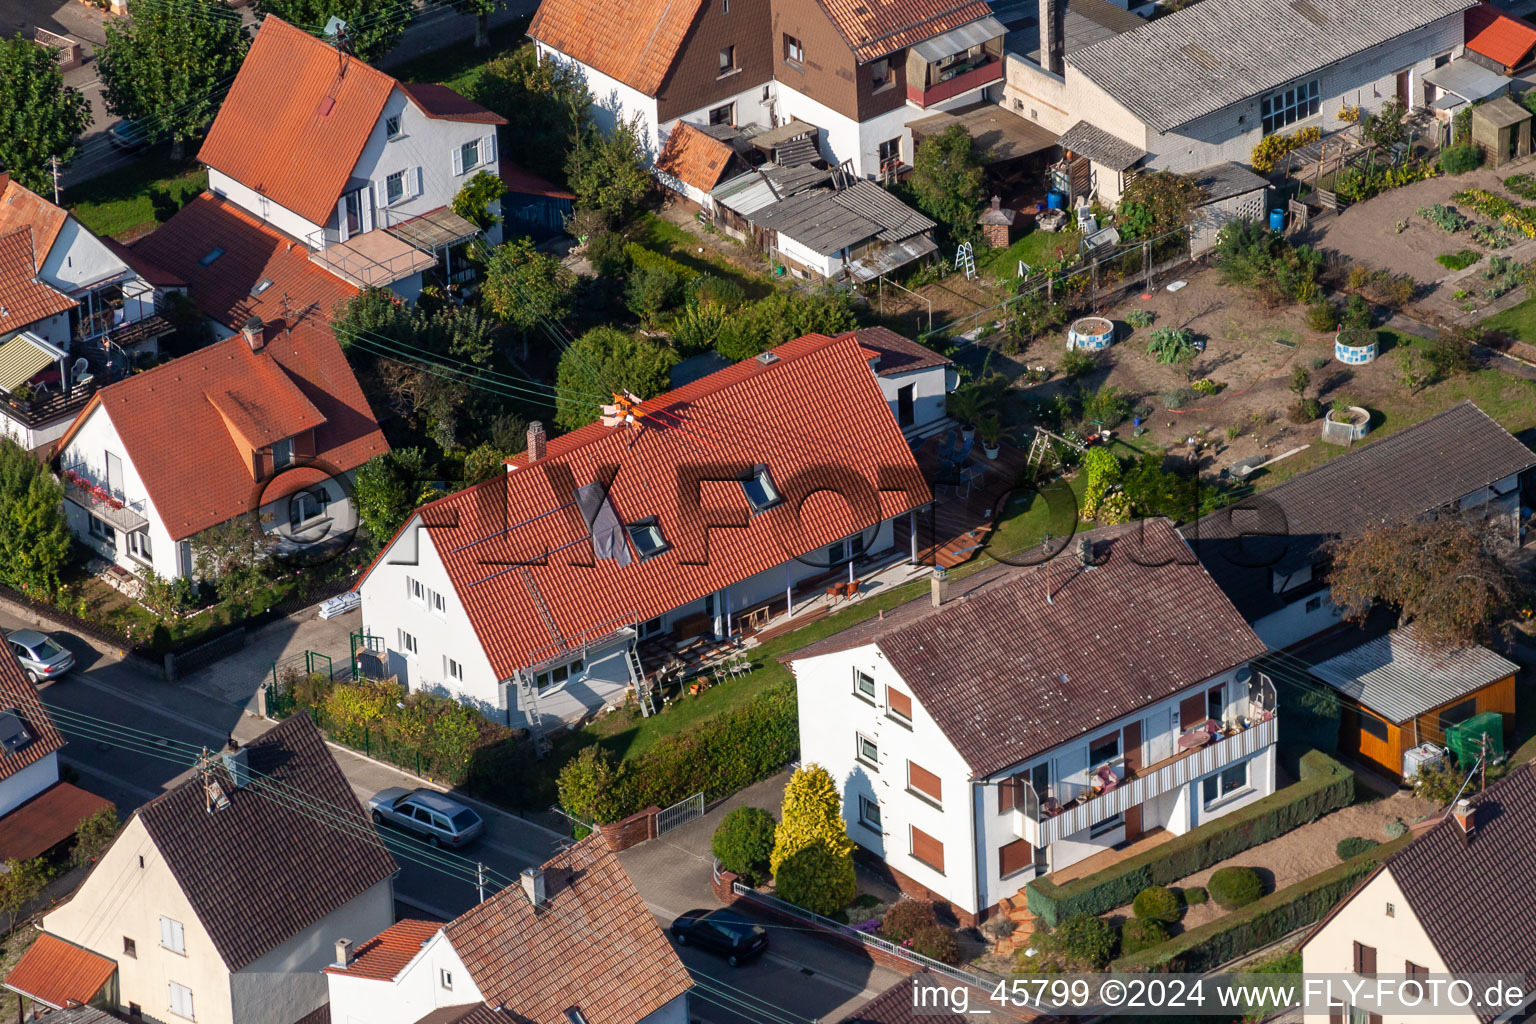 Siedlung Gartenstadt in Kandel im Bundesland Rheinland-Pfalz, Deutschland aus der Drohnenperspektive